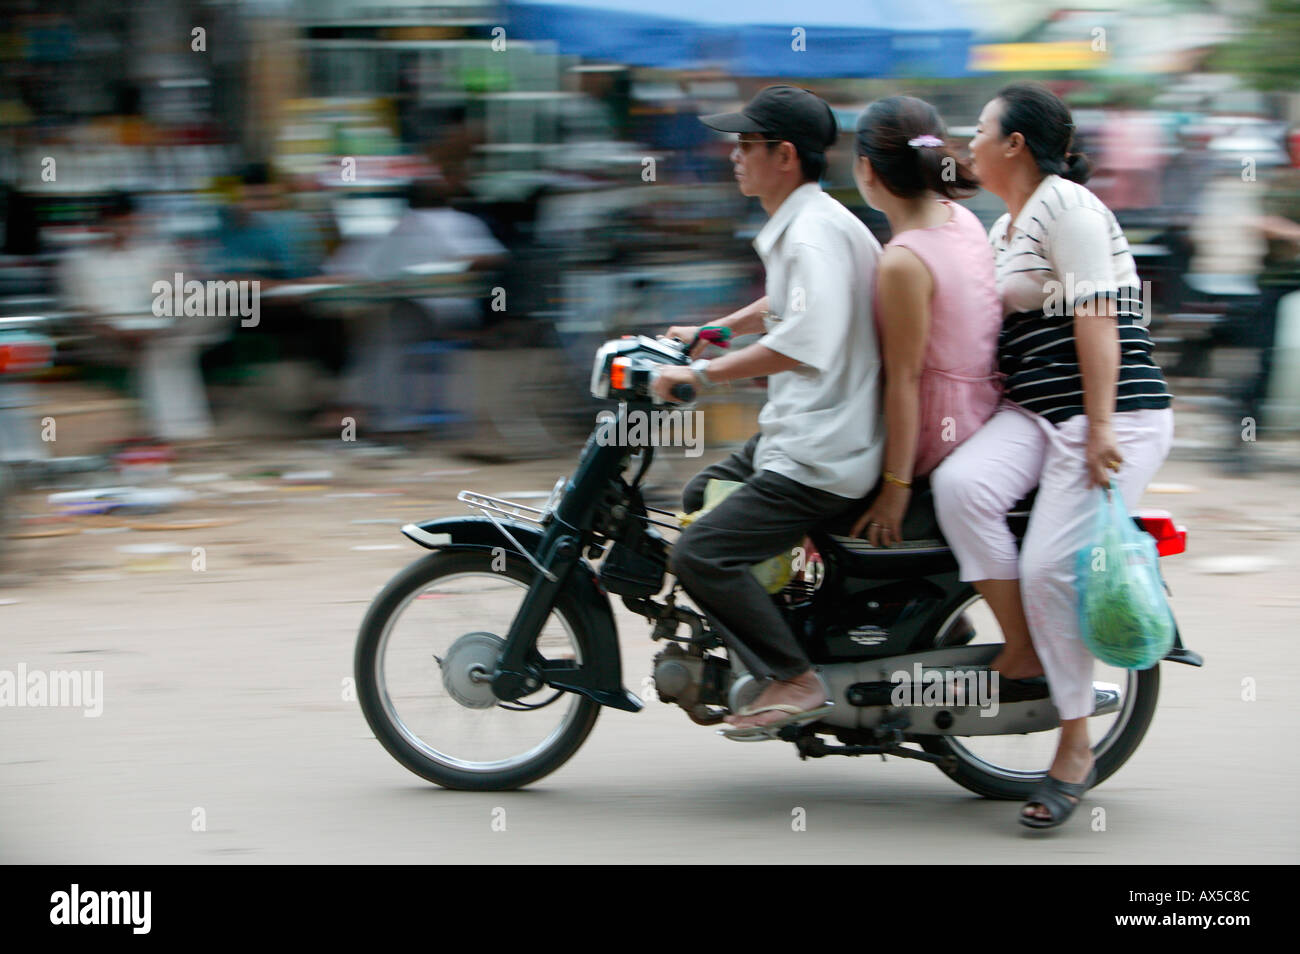 Les gens sur la moto Phnom Penh Cambodge Asie Banque D'Images